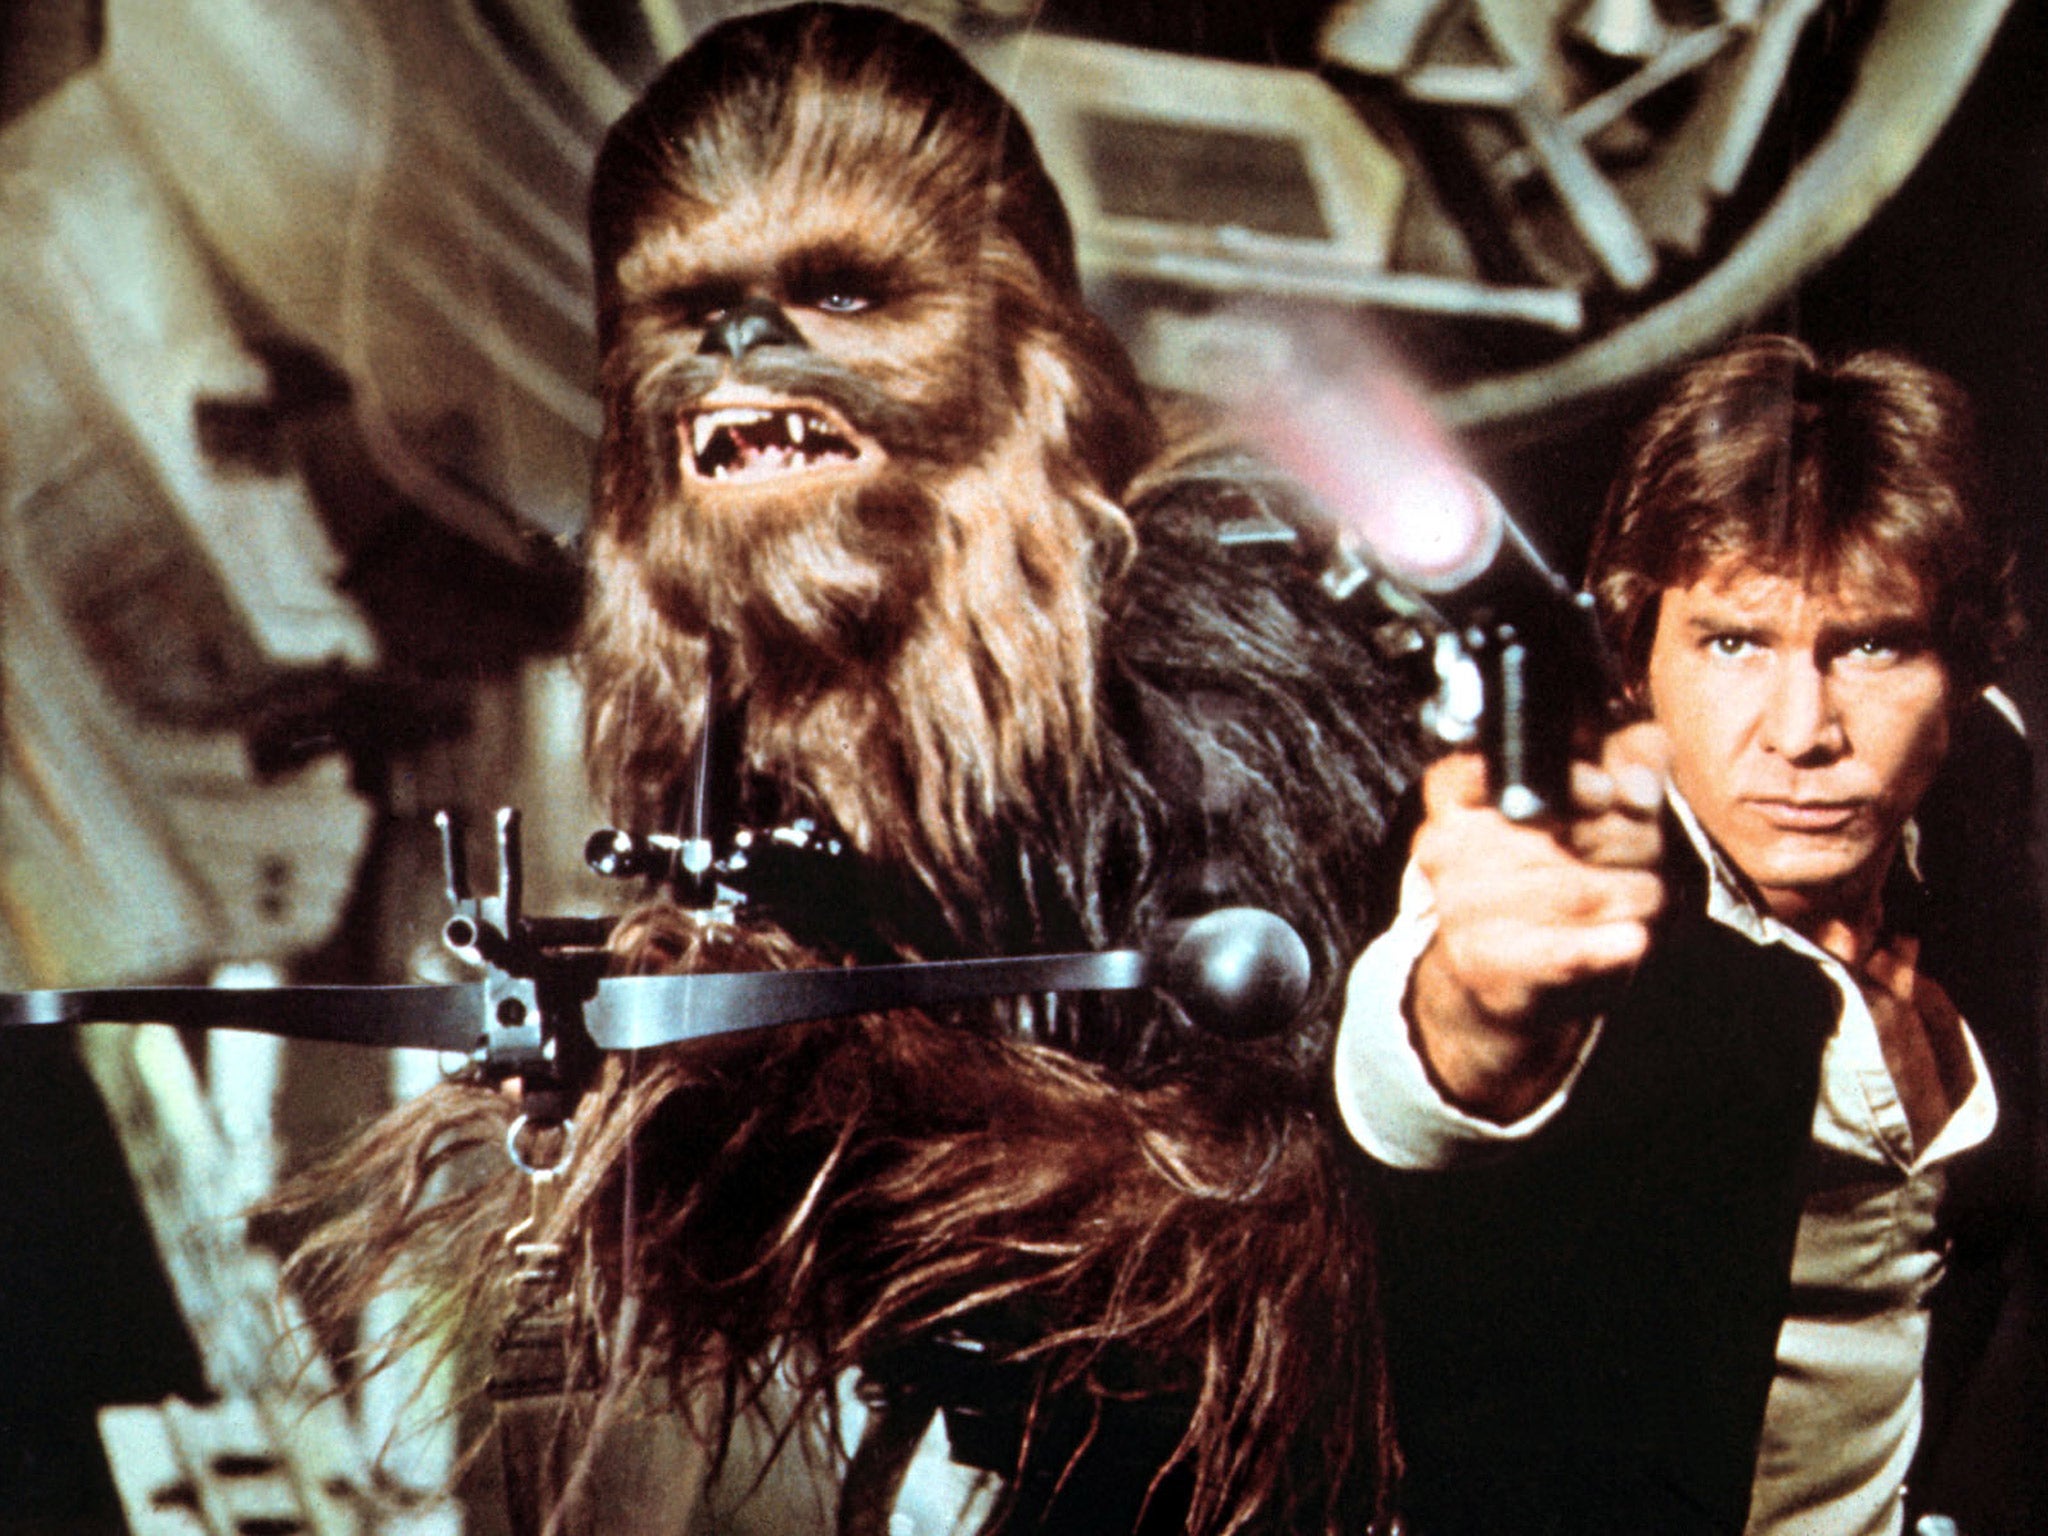 Peter Mayhew as Chewbacca alongside Harrison Ford's Han Solo in 'Star Wars'